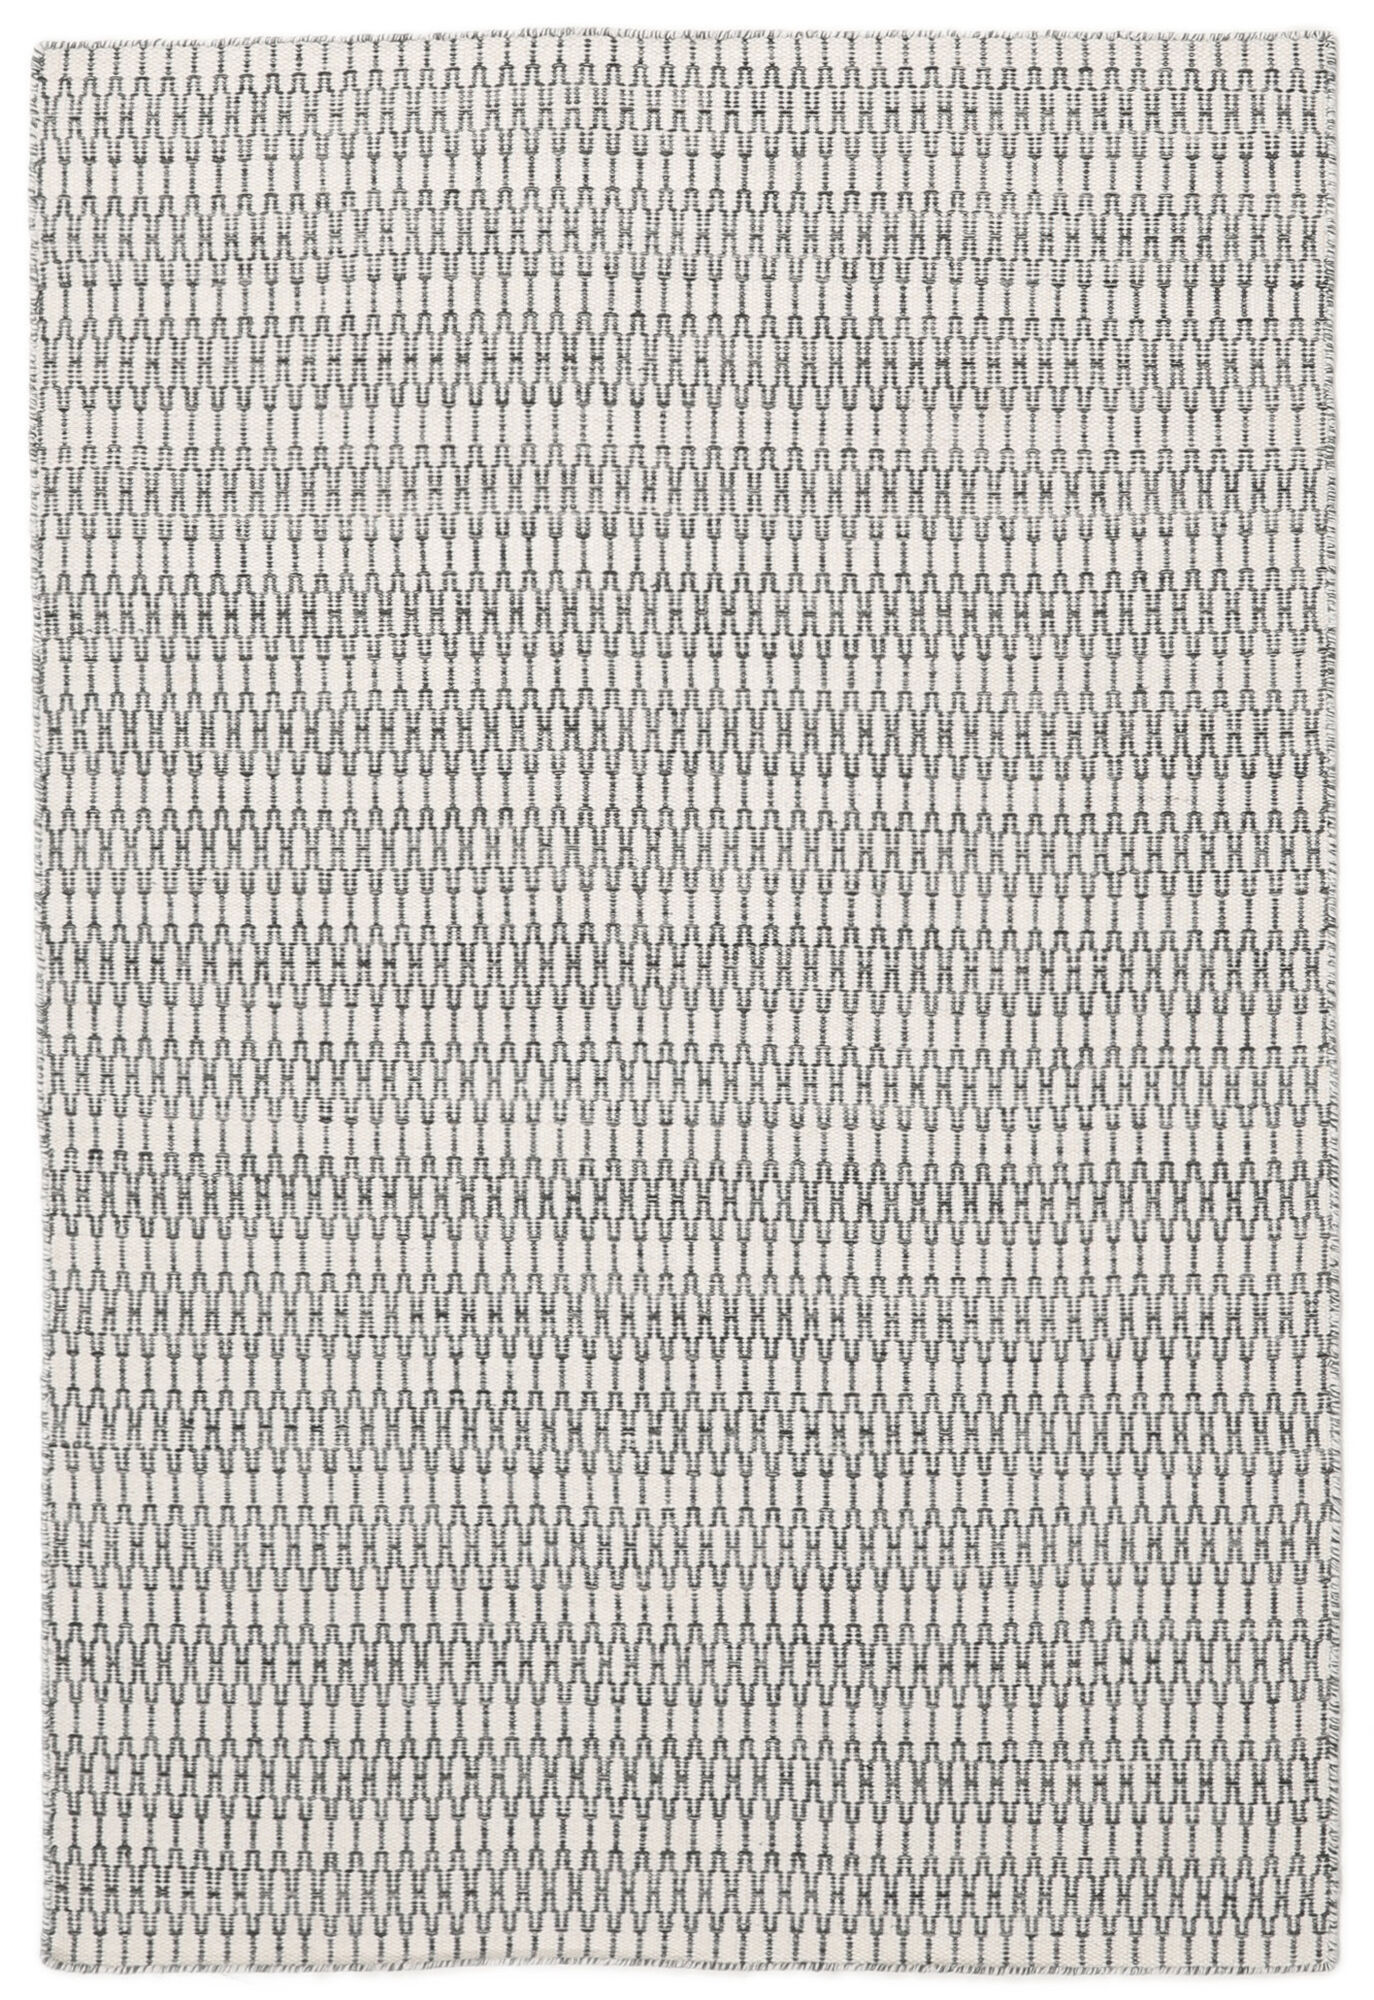 Annodato a mano. Provenienza: India Kilim Long Stitch Tappeto - Bianco crema / Nero 160x230